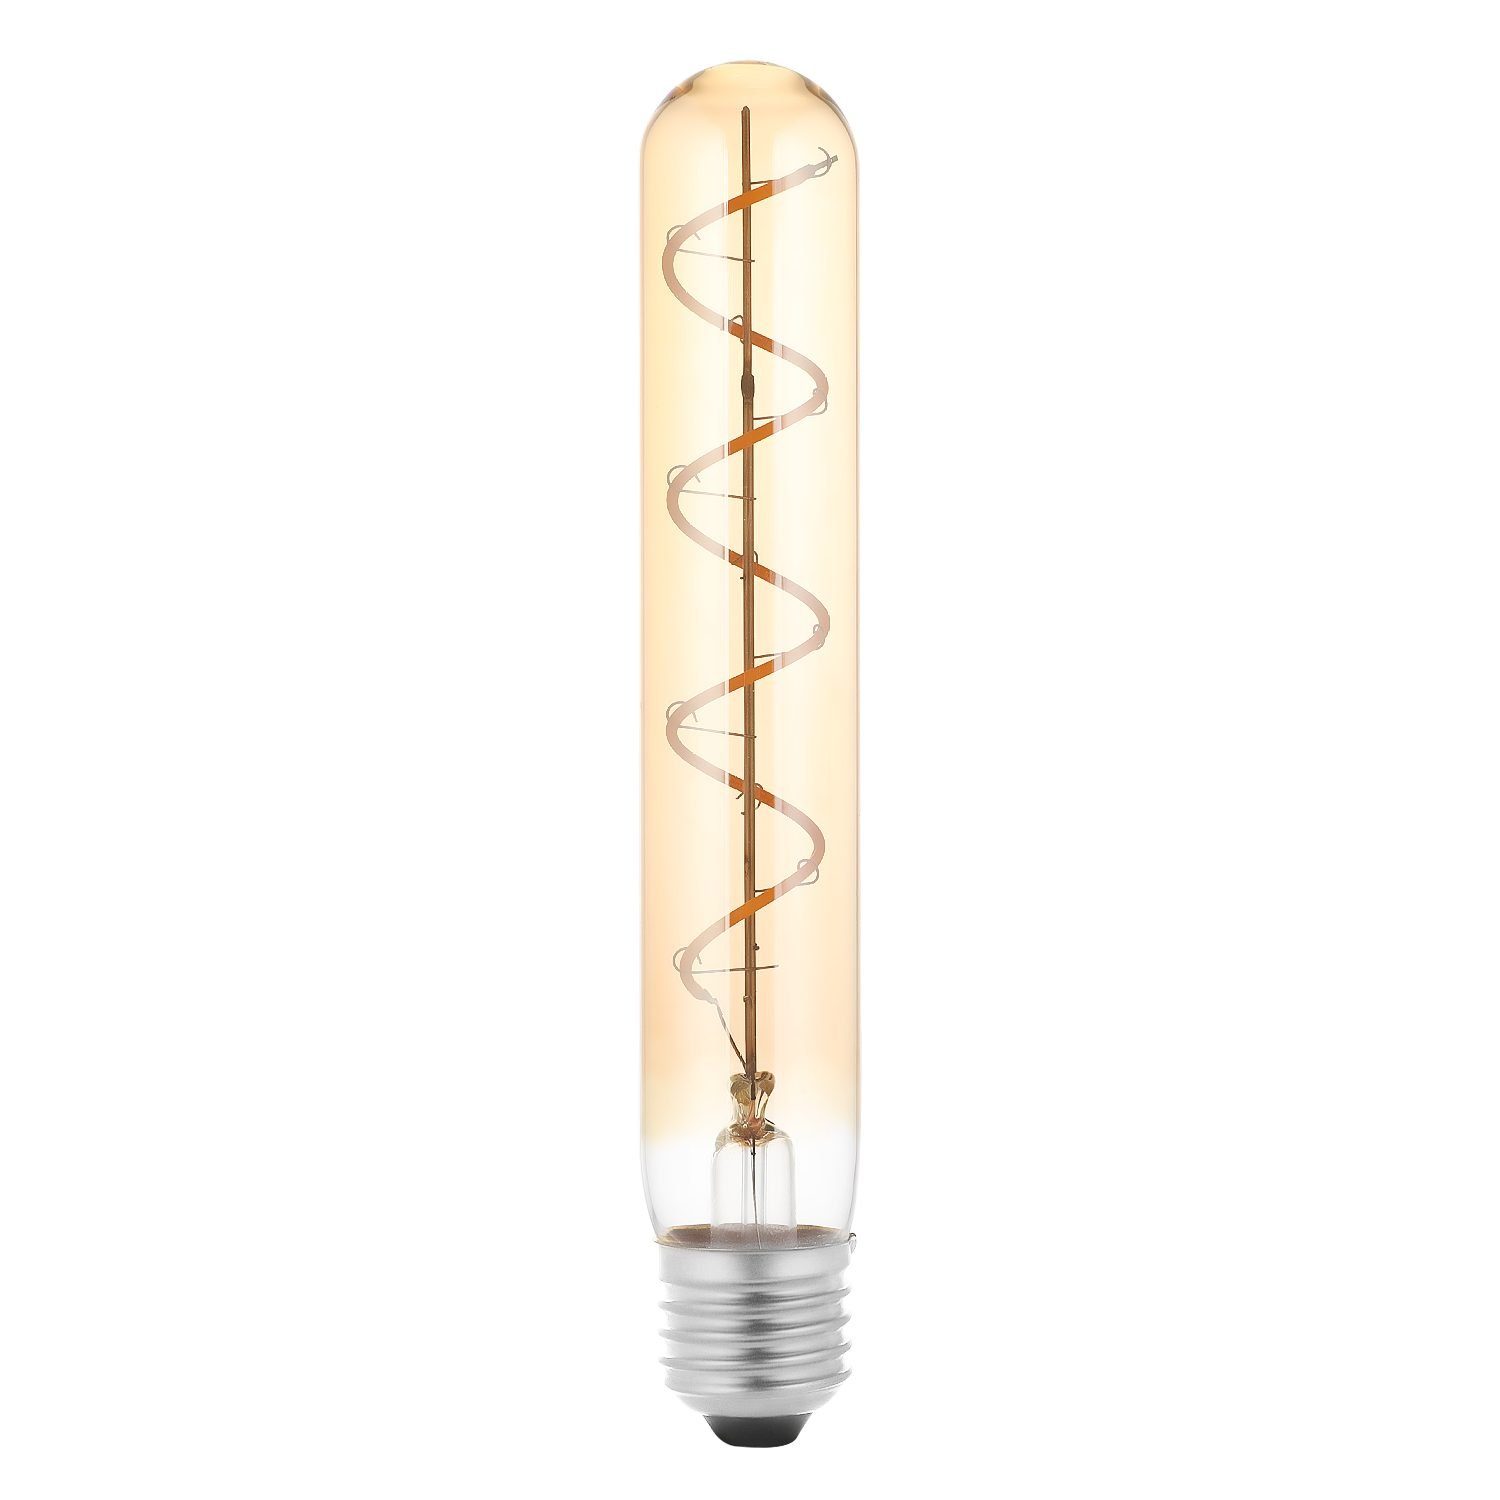 Leuchtmittel Filament Warmweiß Vintage Warmweiss, iscooter LED Edison Flutlichtstrahler Glühbirne E27 Retro